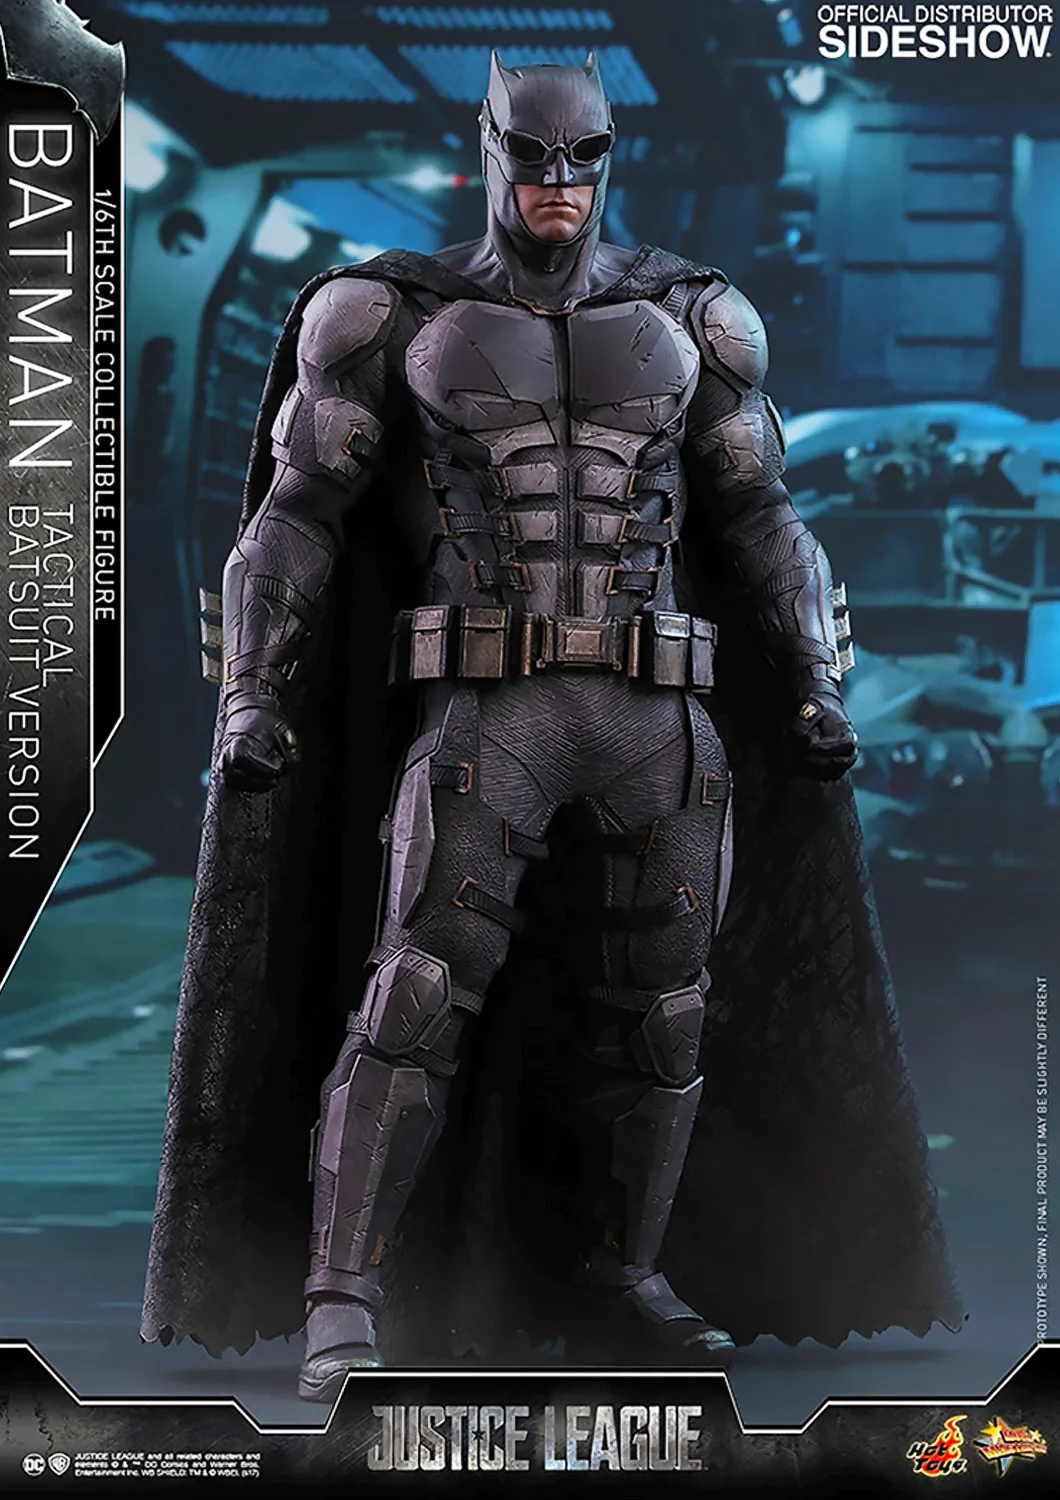 Justice League - Tactical Suit Batman Statue by Prime 1 Studio